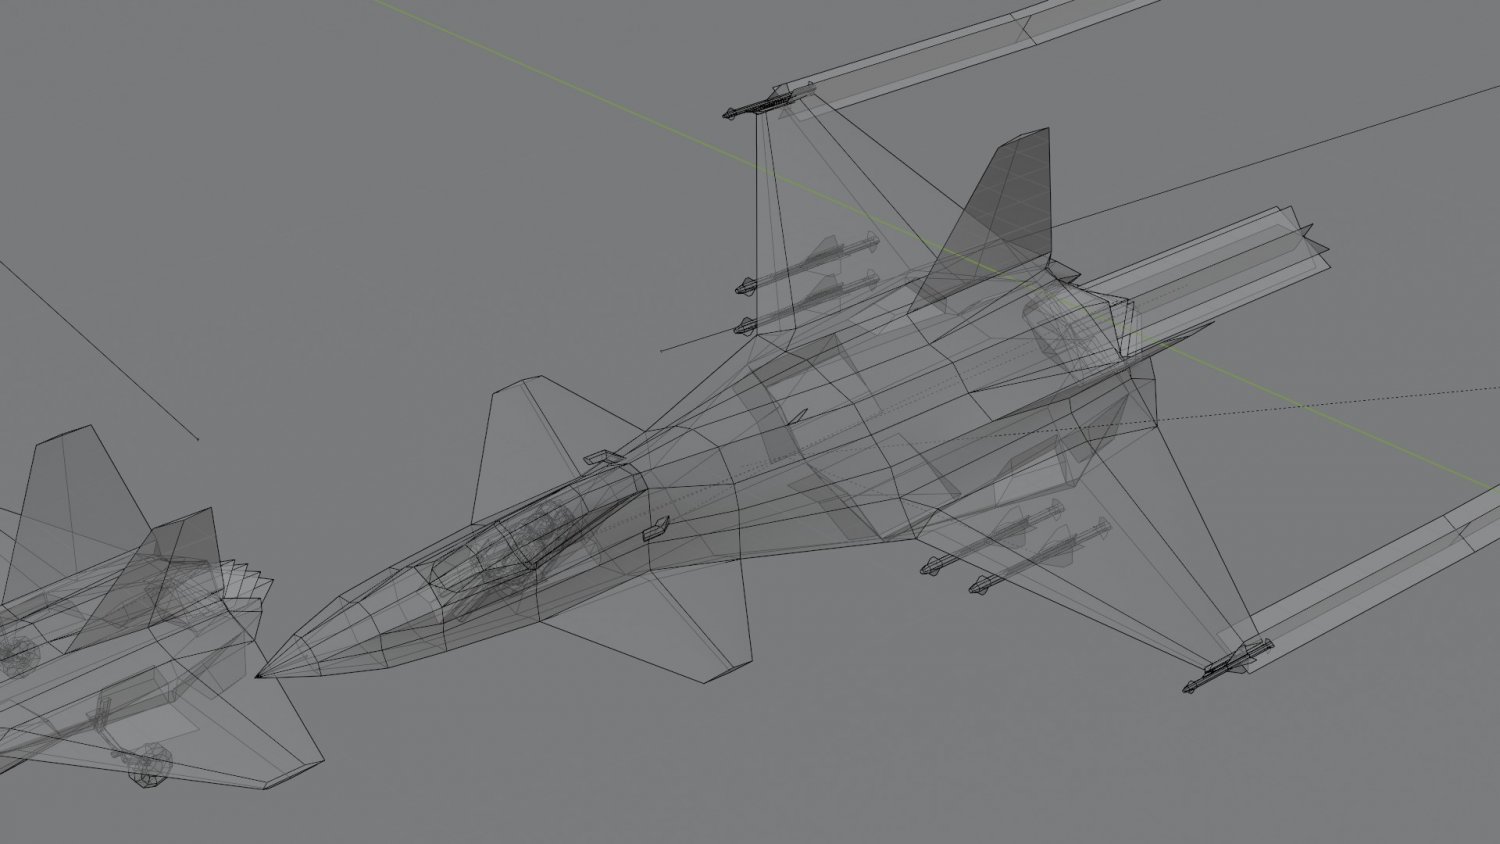 Mô hình máy bay chiến đấu Skunk F-33 Lancer thấp poly khái niệm: Mô hình Skunk F-33 Lancer thấp poly khái niệm được thiết kế độc đáo, đầy sáng tạo và mang tính thẩm mỹ cao. Điểm đặc biệt của sản phẩm là với số lượng đường nét được giảm thiểu, bạn sẽ có thể tập trung vào thiết kế tổng thể của mô hình. Hãy cùng trải nghiệm với mô hình Skunk F-33 Lancer và tìm hiểu sự độc đáo của sản phẩm.